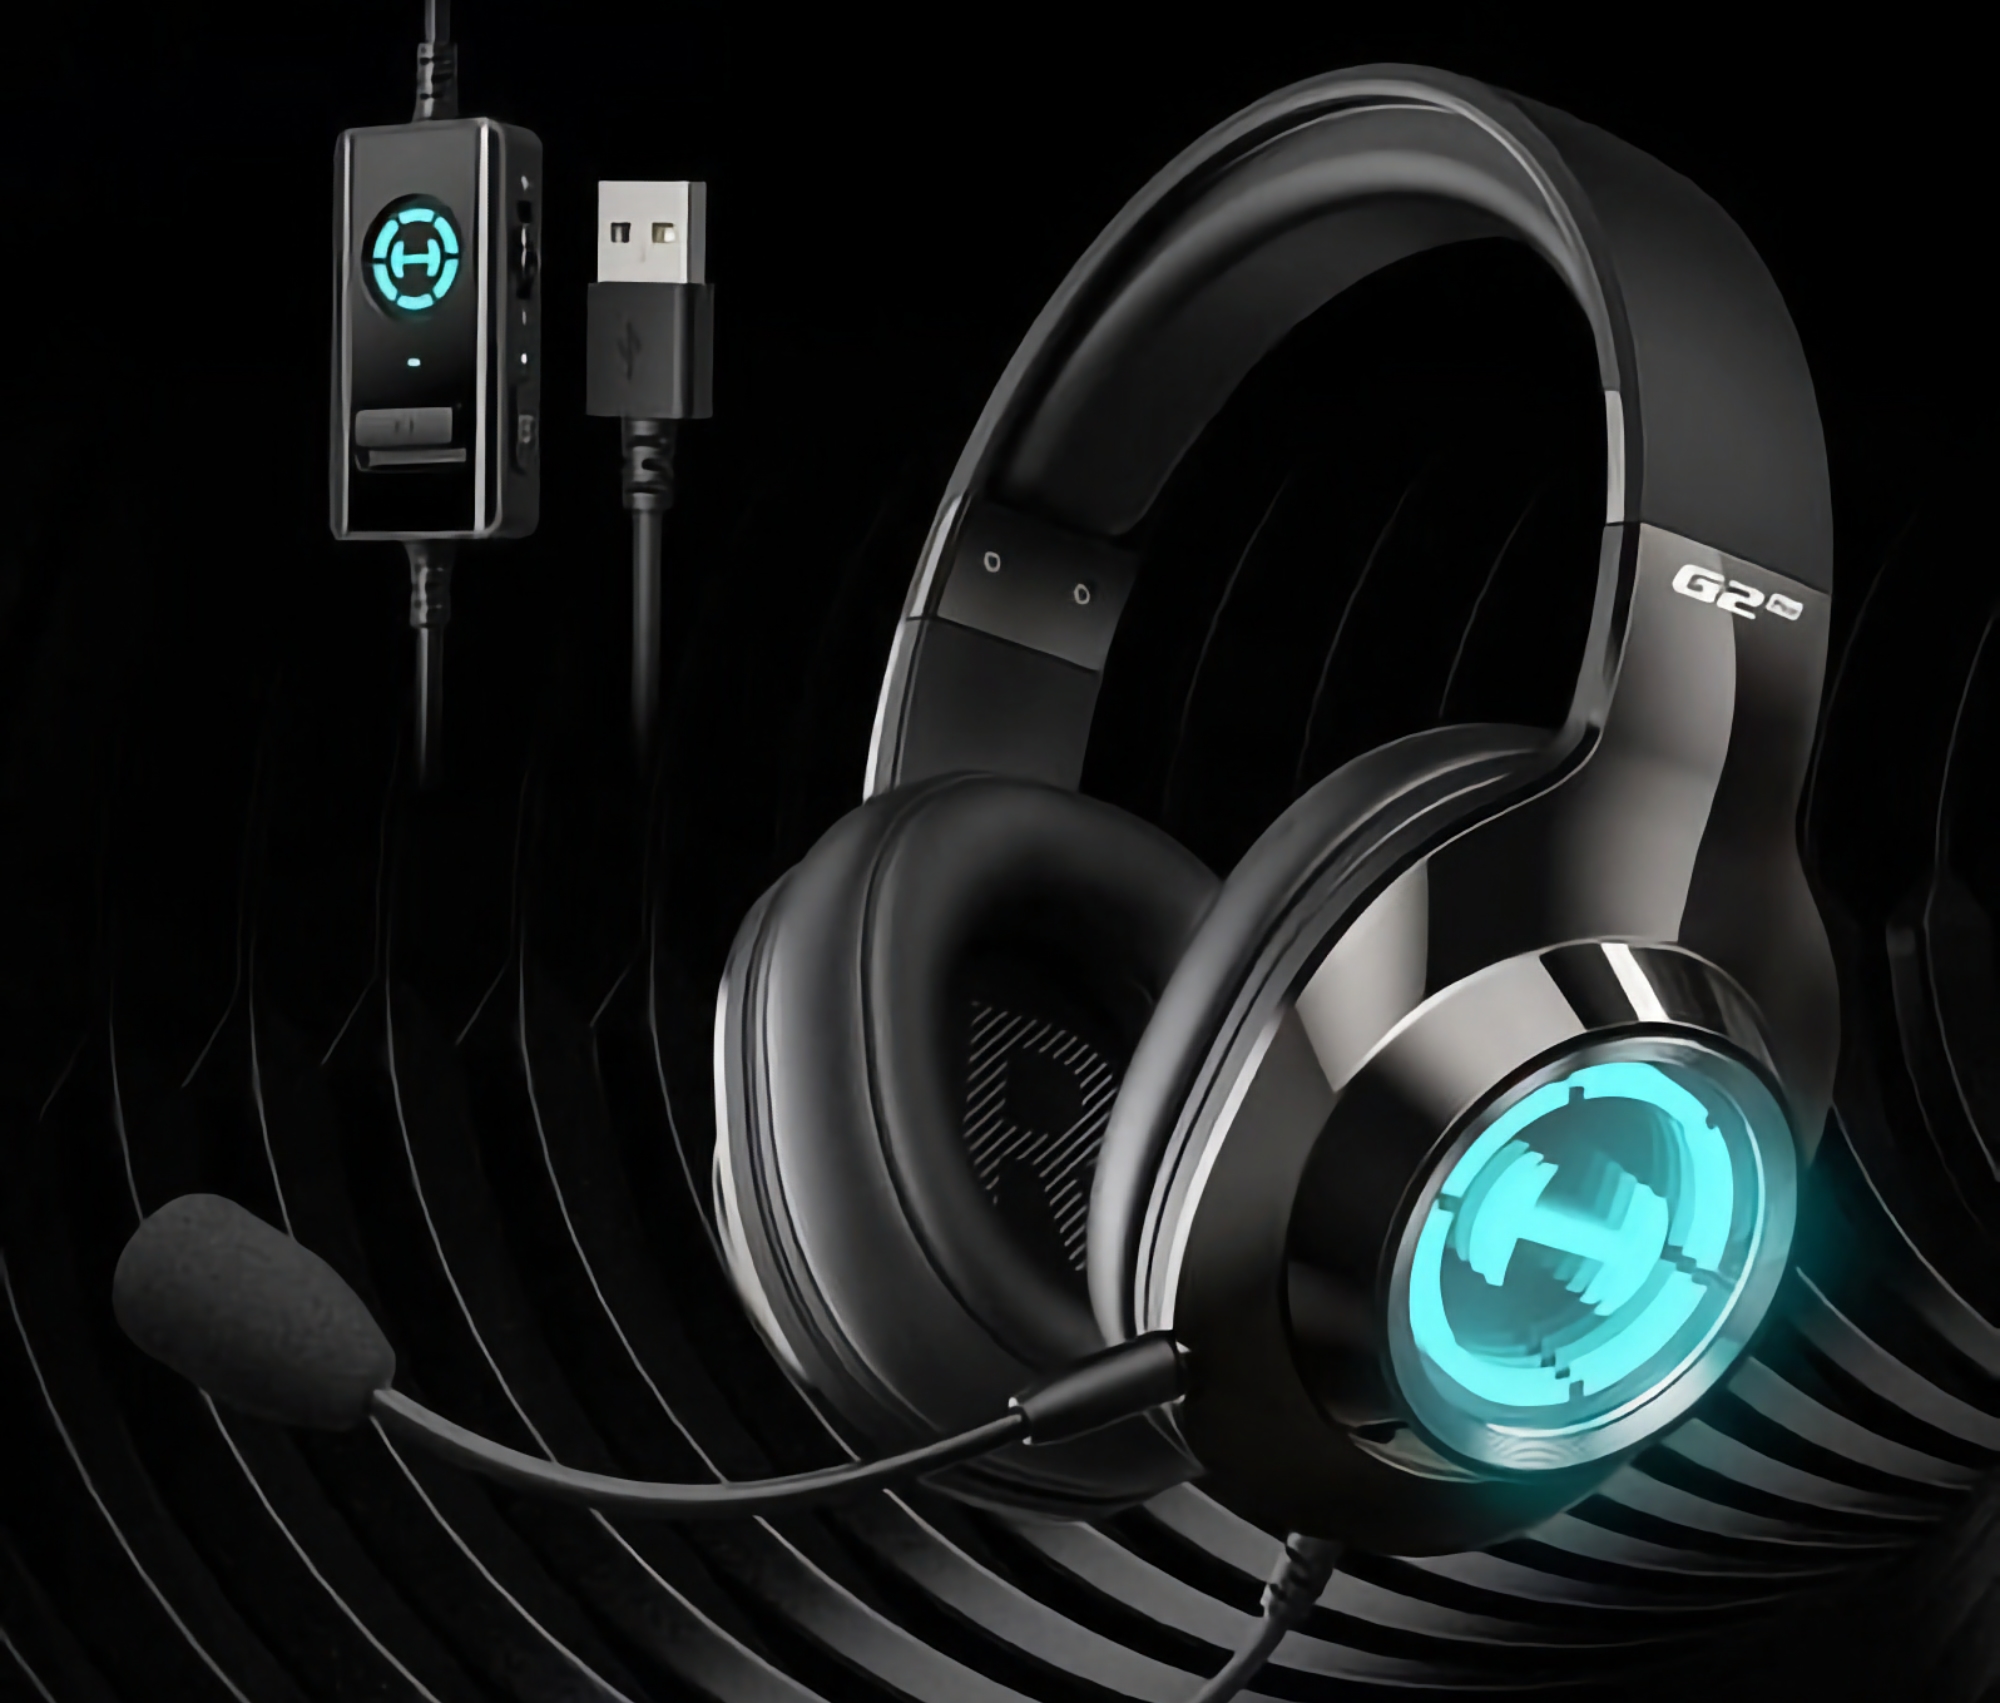 Edifier HECATE G2 Pro eSports: Gaming hoofdtelefoon met titanium drivers, RGB verlichting en 7.1 surround sound ondersteuning